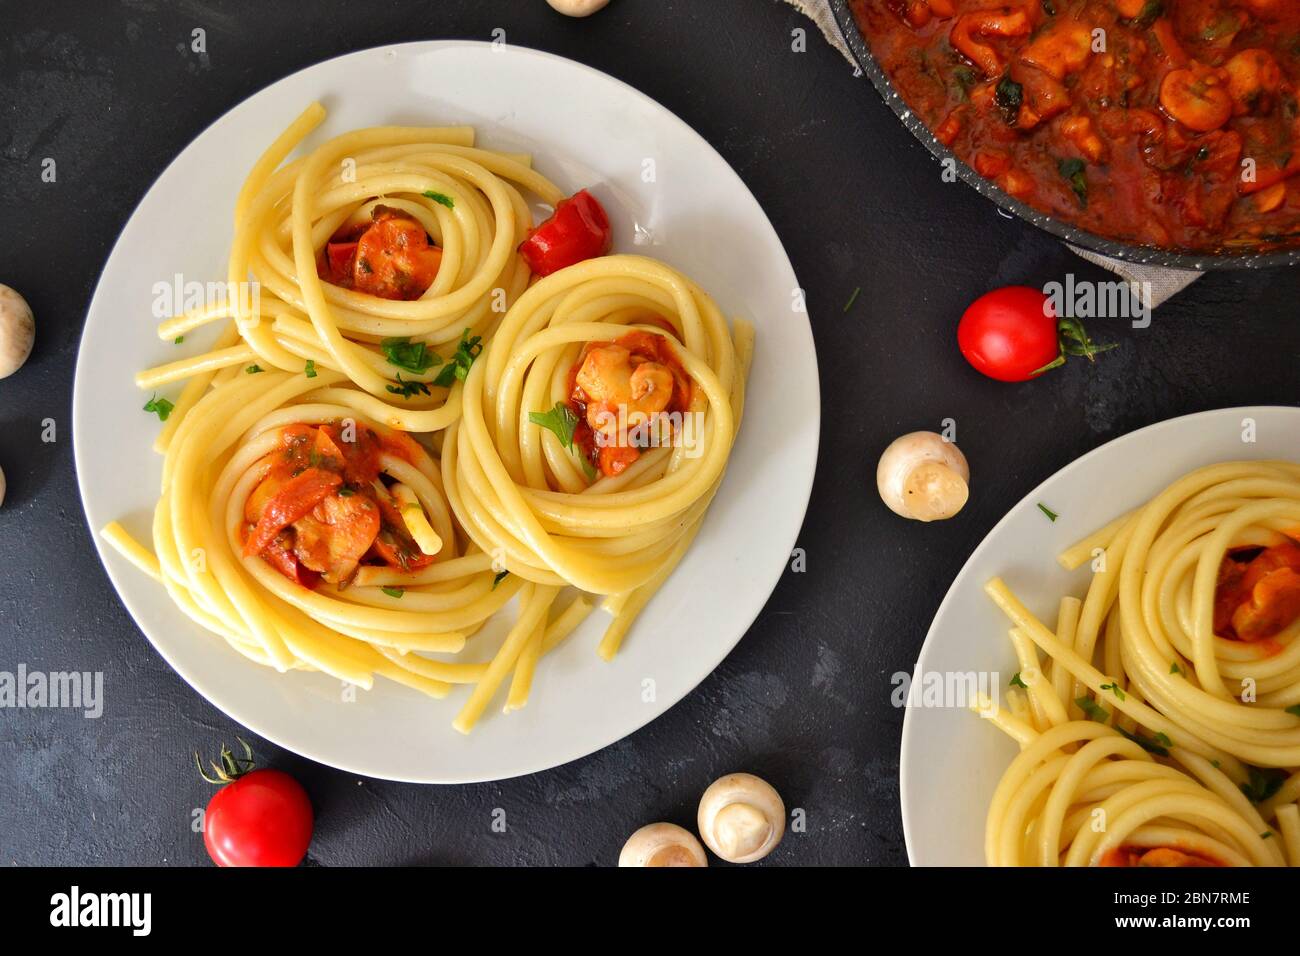 Pâtes dans une assiette blanche sur fond sombre. Spaghetti appétissants avec tomates et champignons. Vue de dessus de la nourriture. Banque D'Images